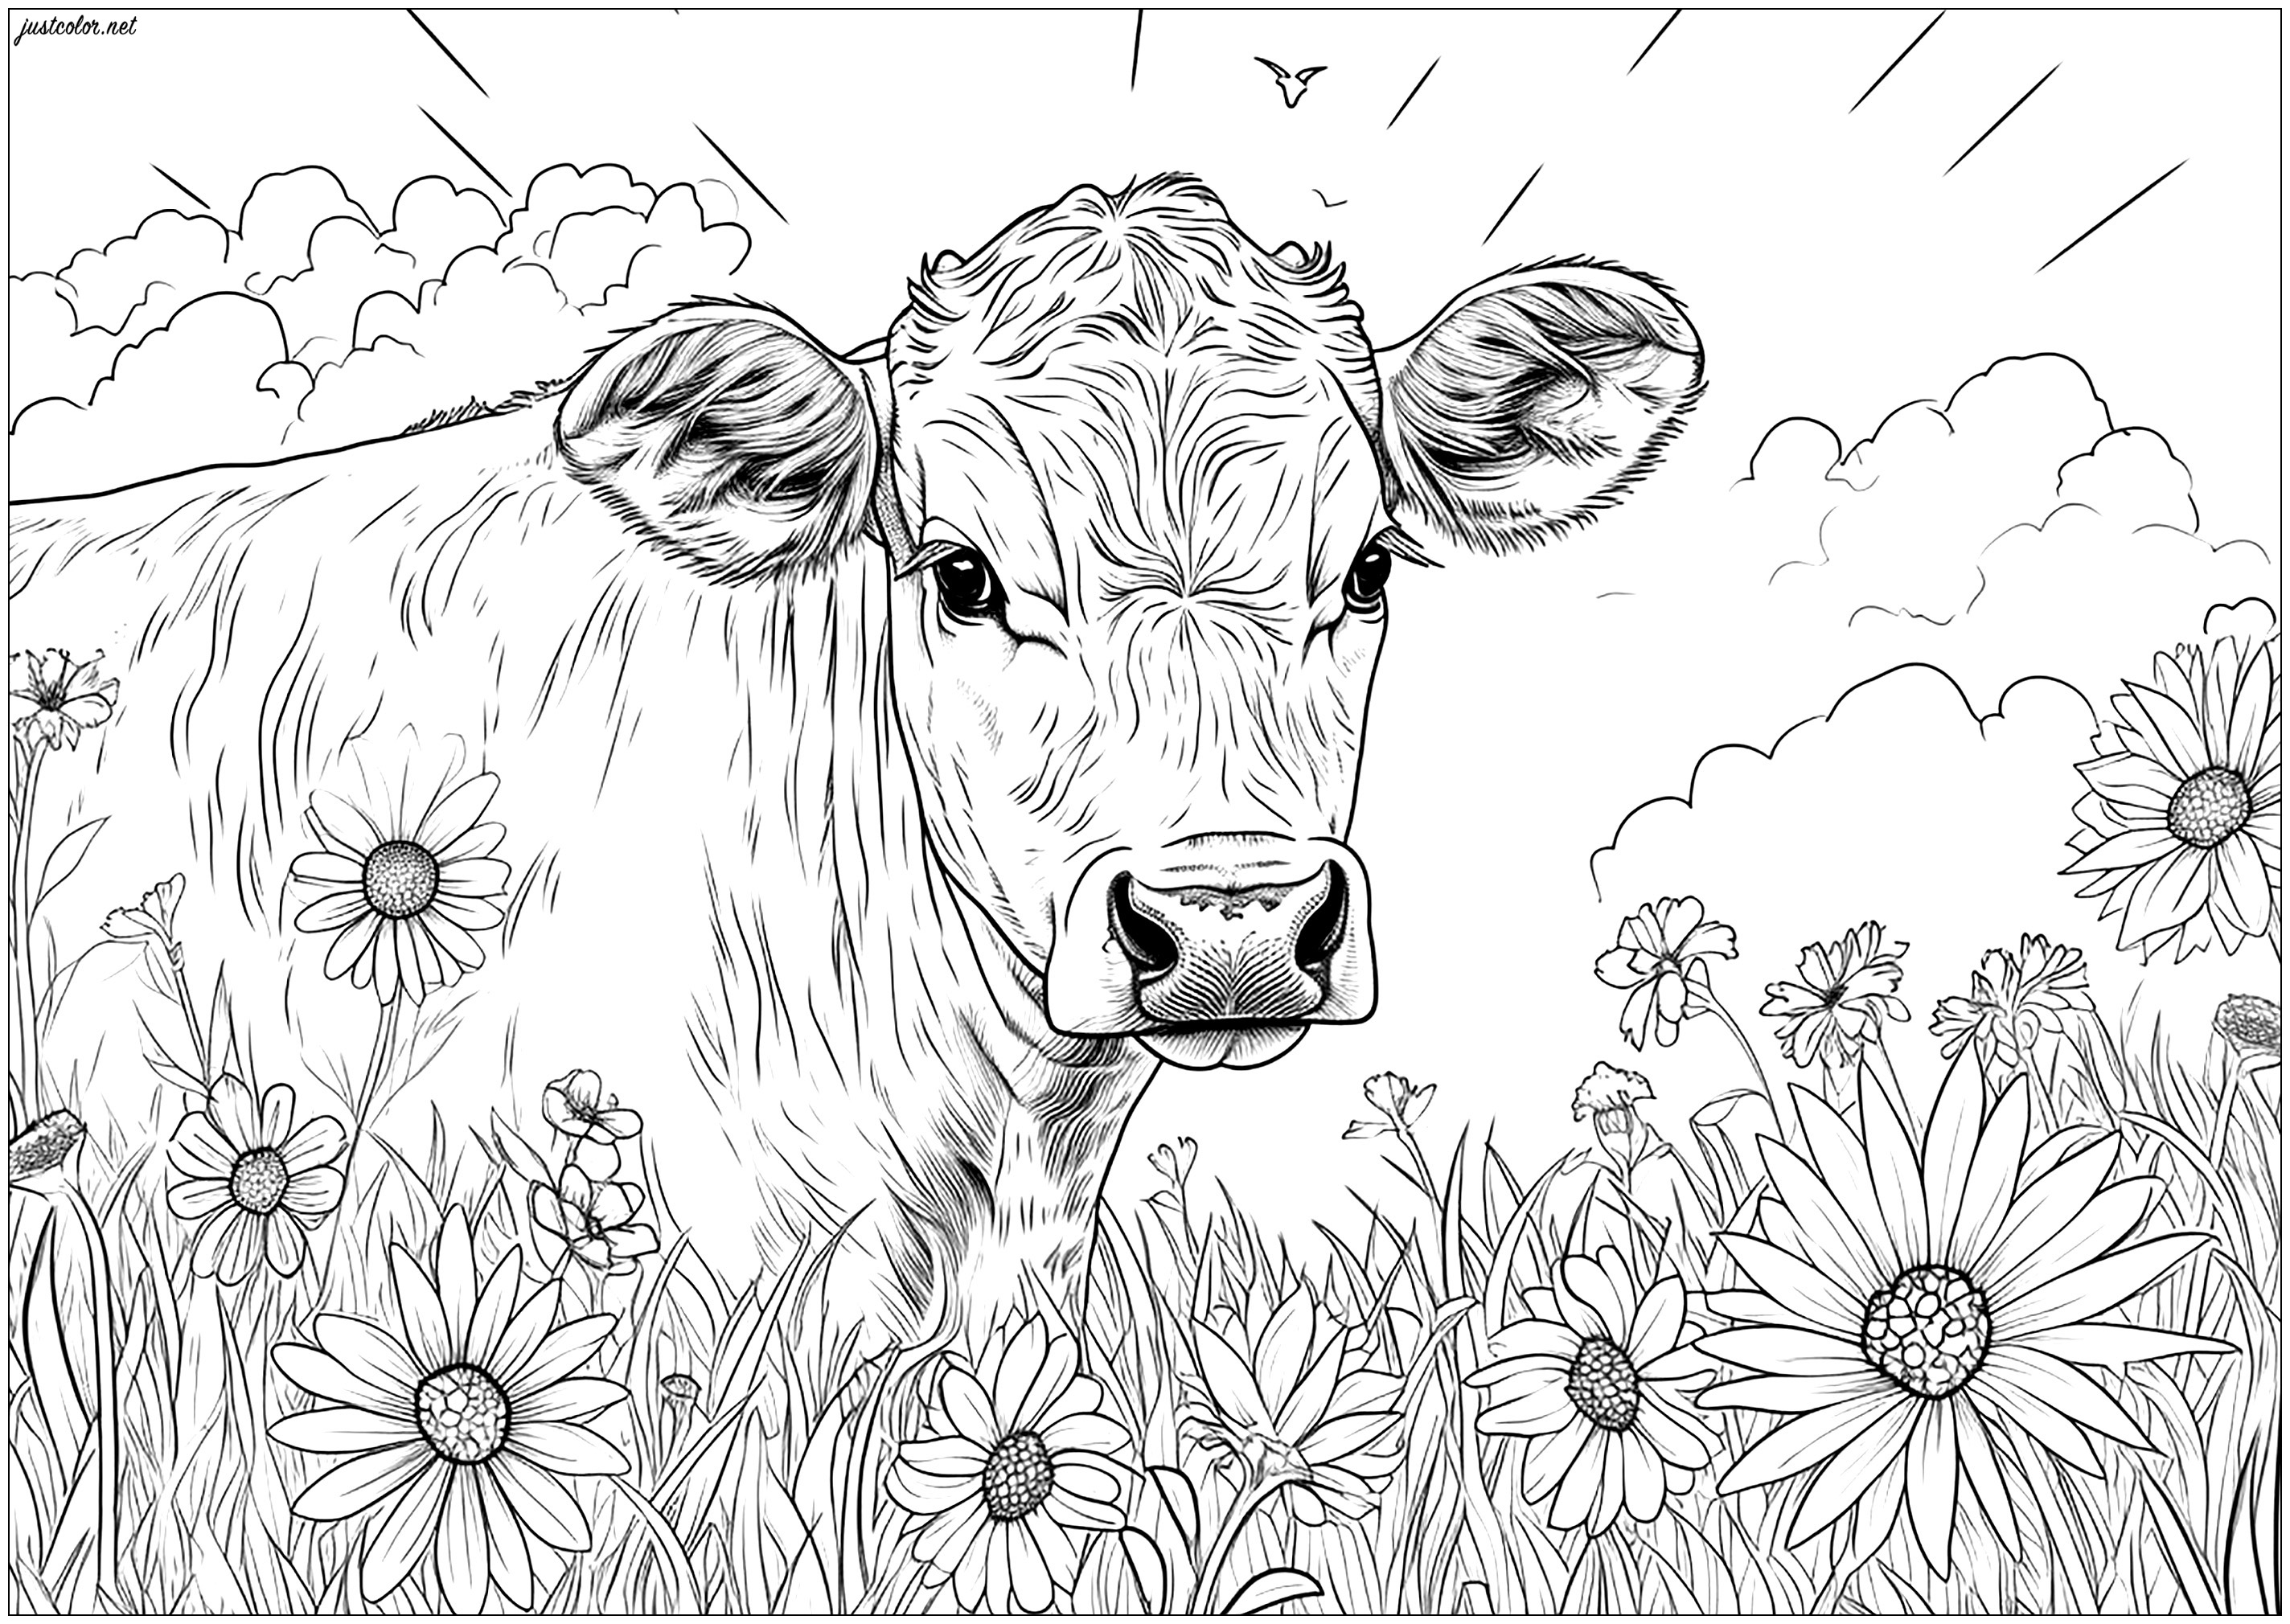 Bonita vaca en prados llenos de flores